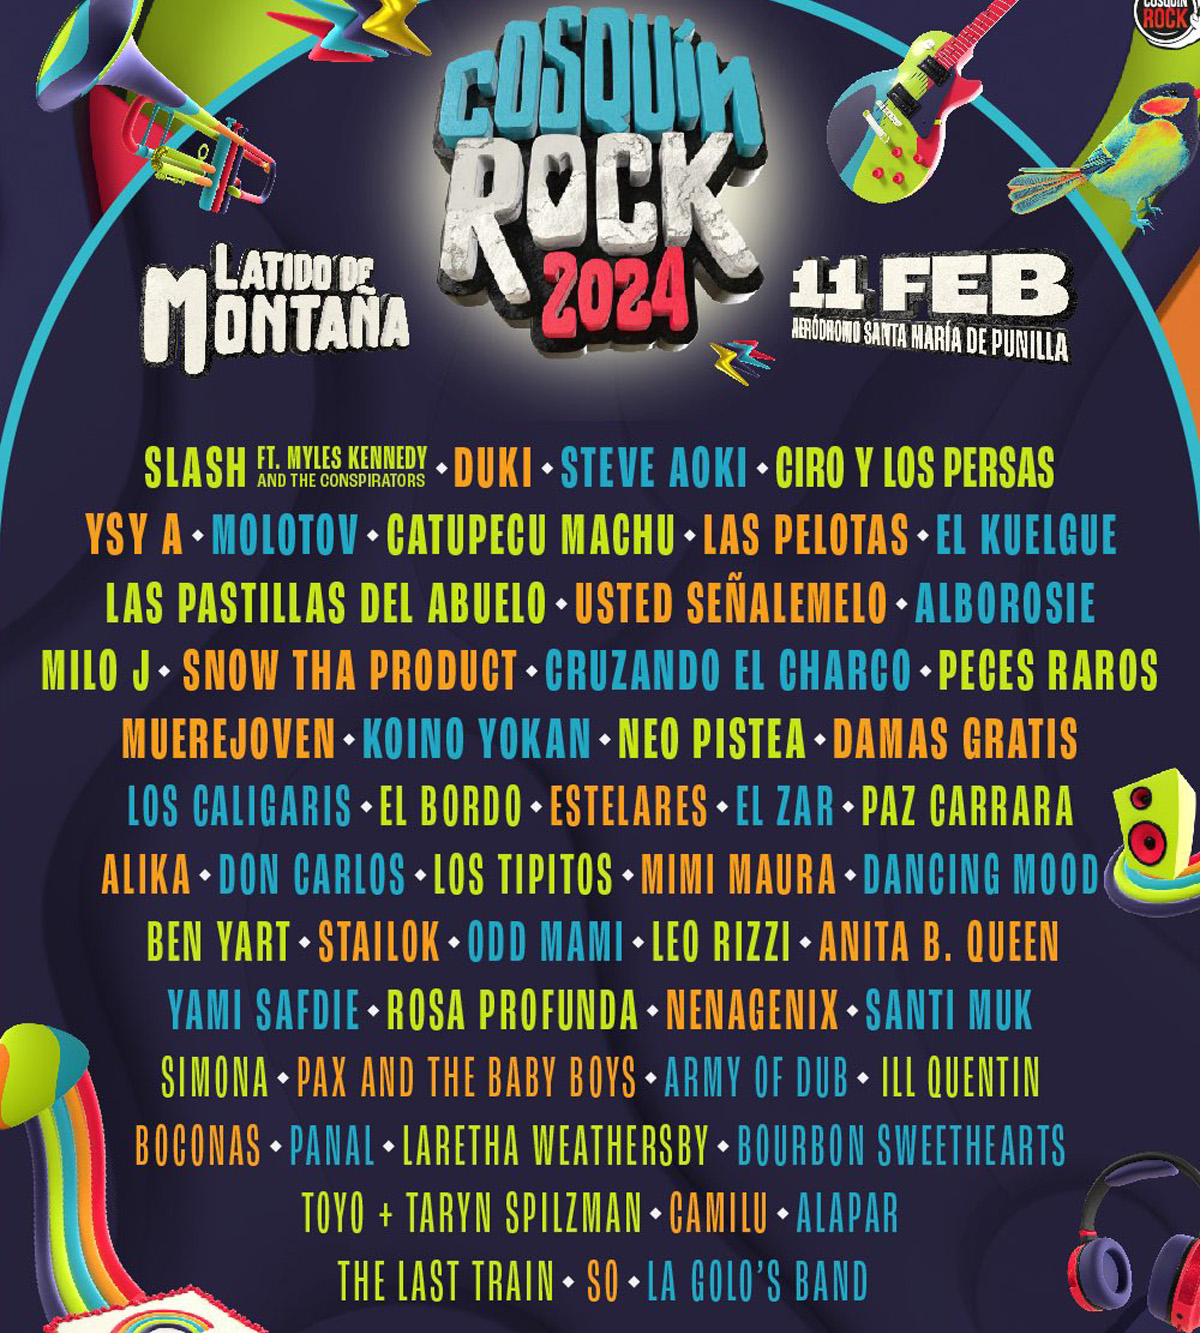 Grilla Cosquín Rock 2024 - Line Up Día domingo 11